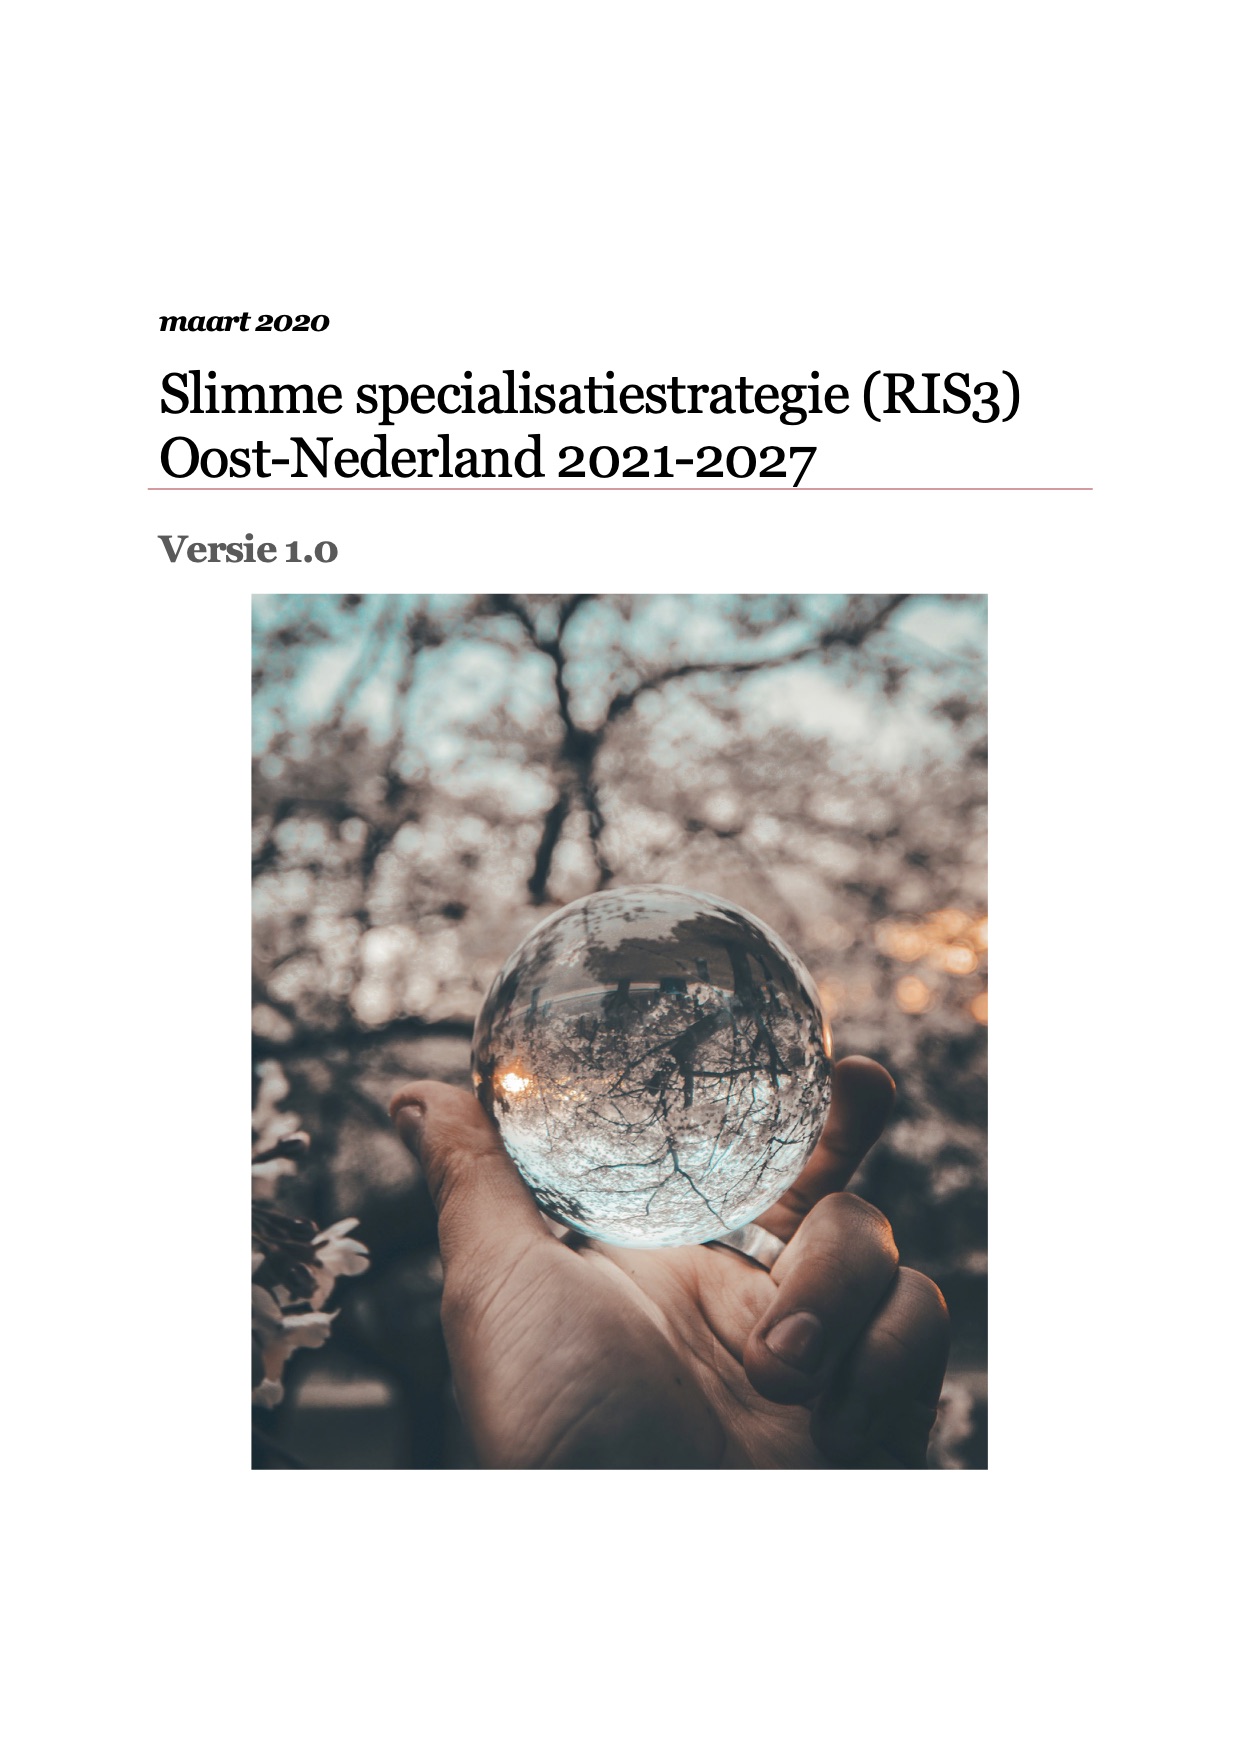 Slimme specialisatiestrategie (RIS3) Oost-Nederland 2021-2027